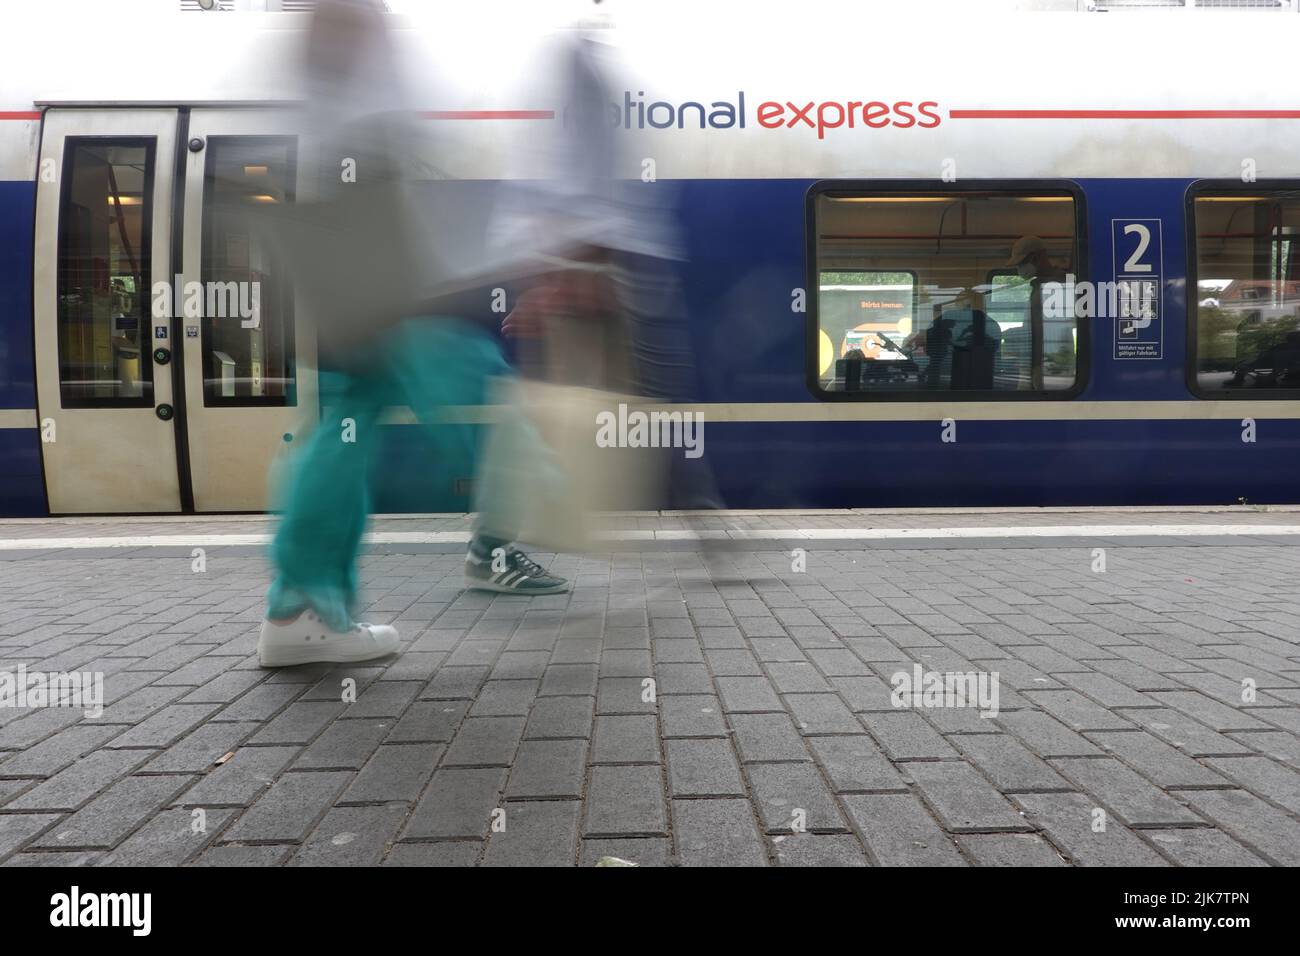 National Express-Zug am Bahnhof Köln-Süd, Nordrhein-Westfalen, Deutschland, Köln Stock Photo